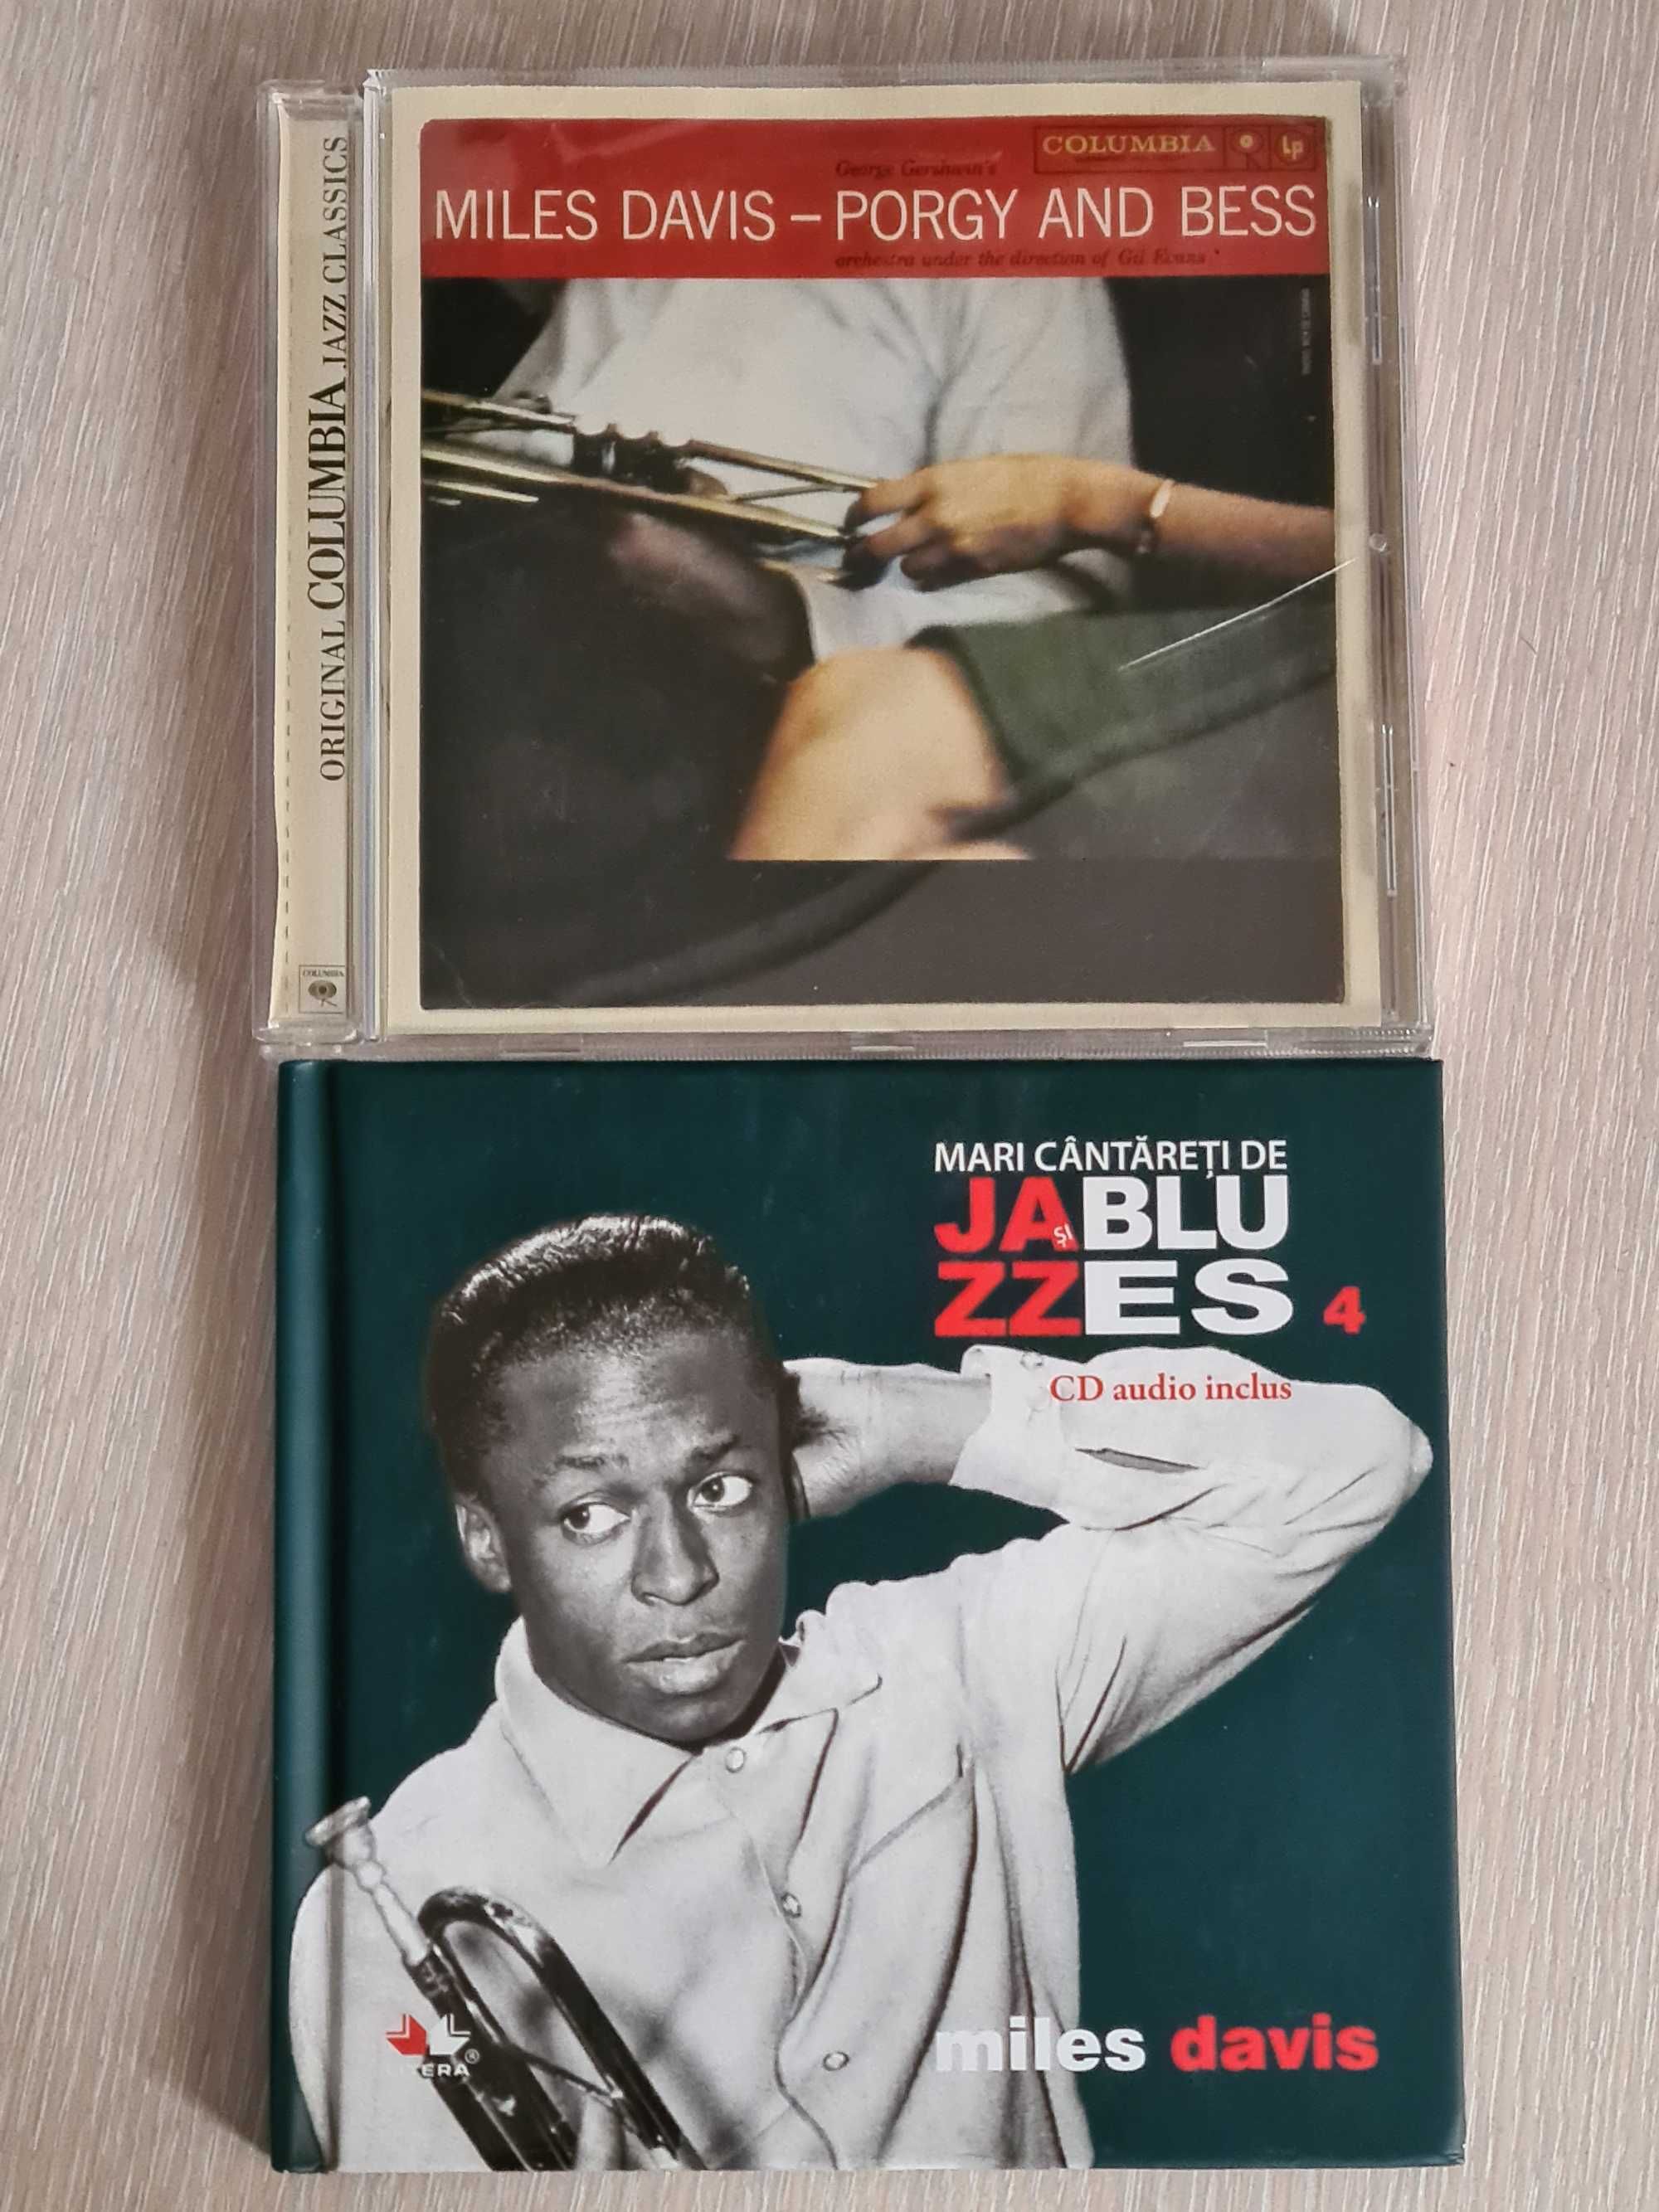 Vand pachet 2 CD-uri Miles Davis muzica Jazz